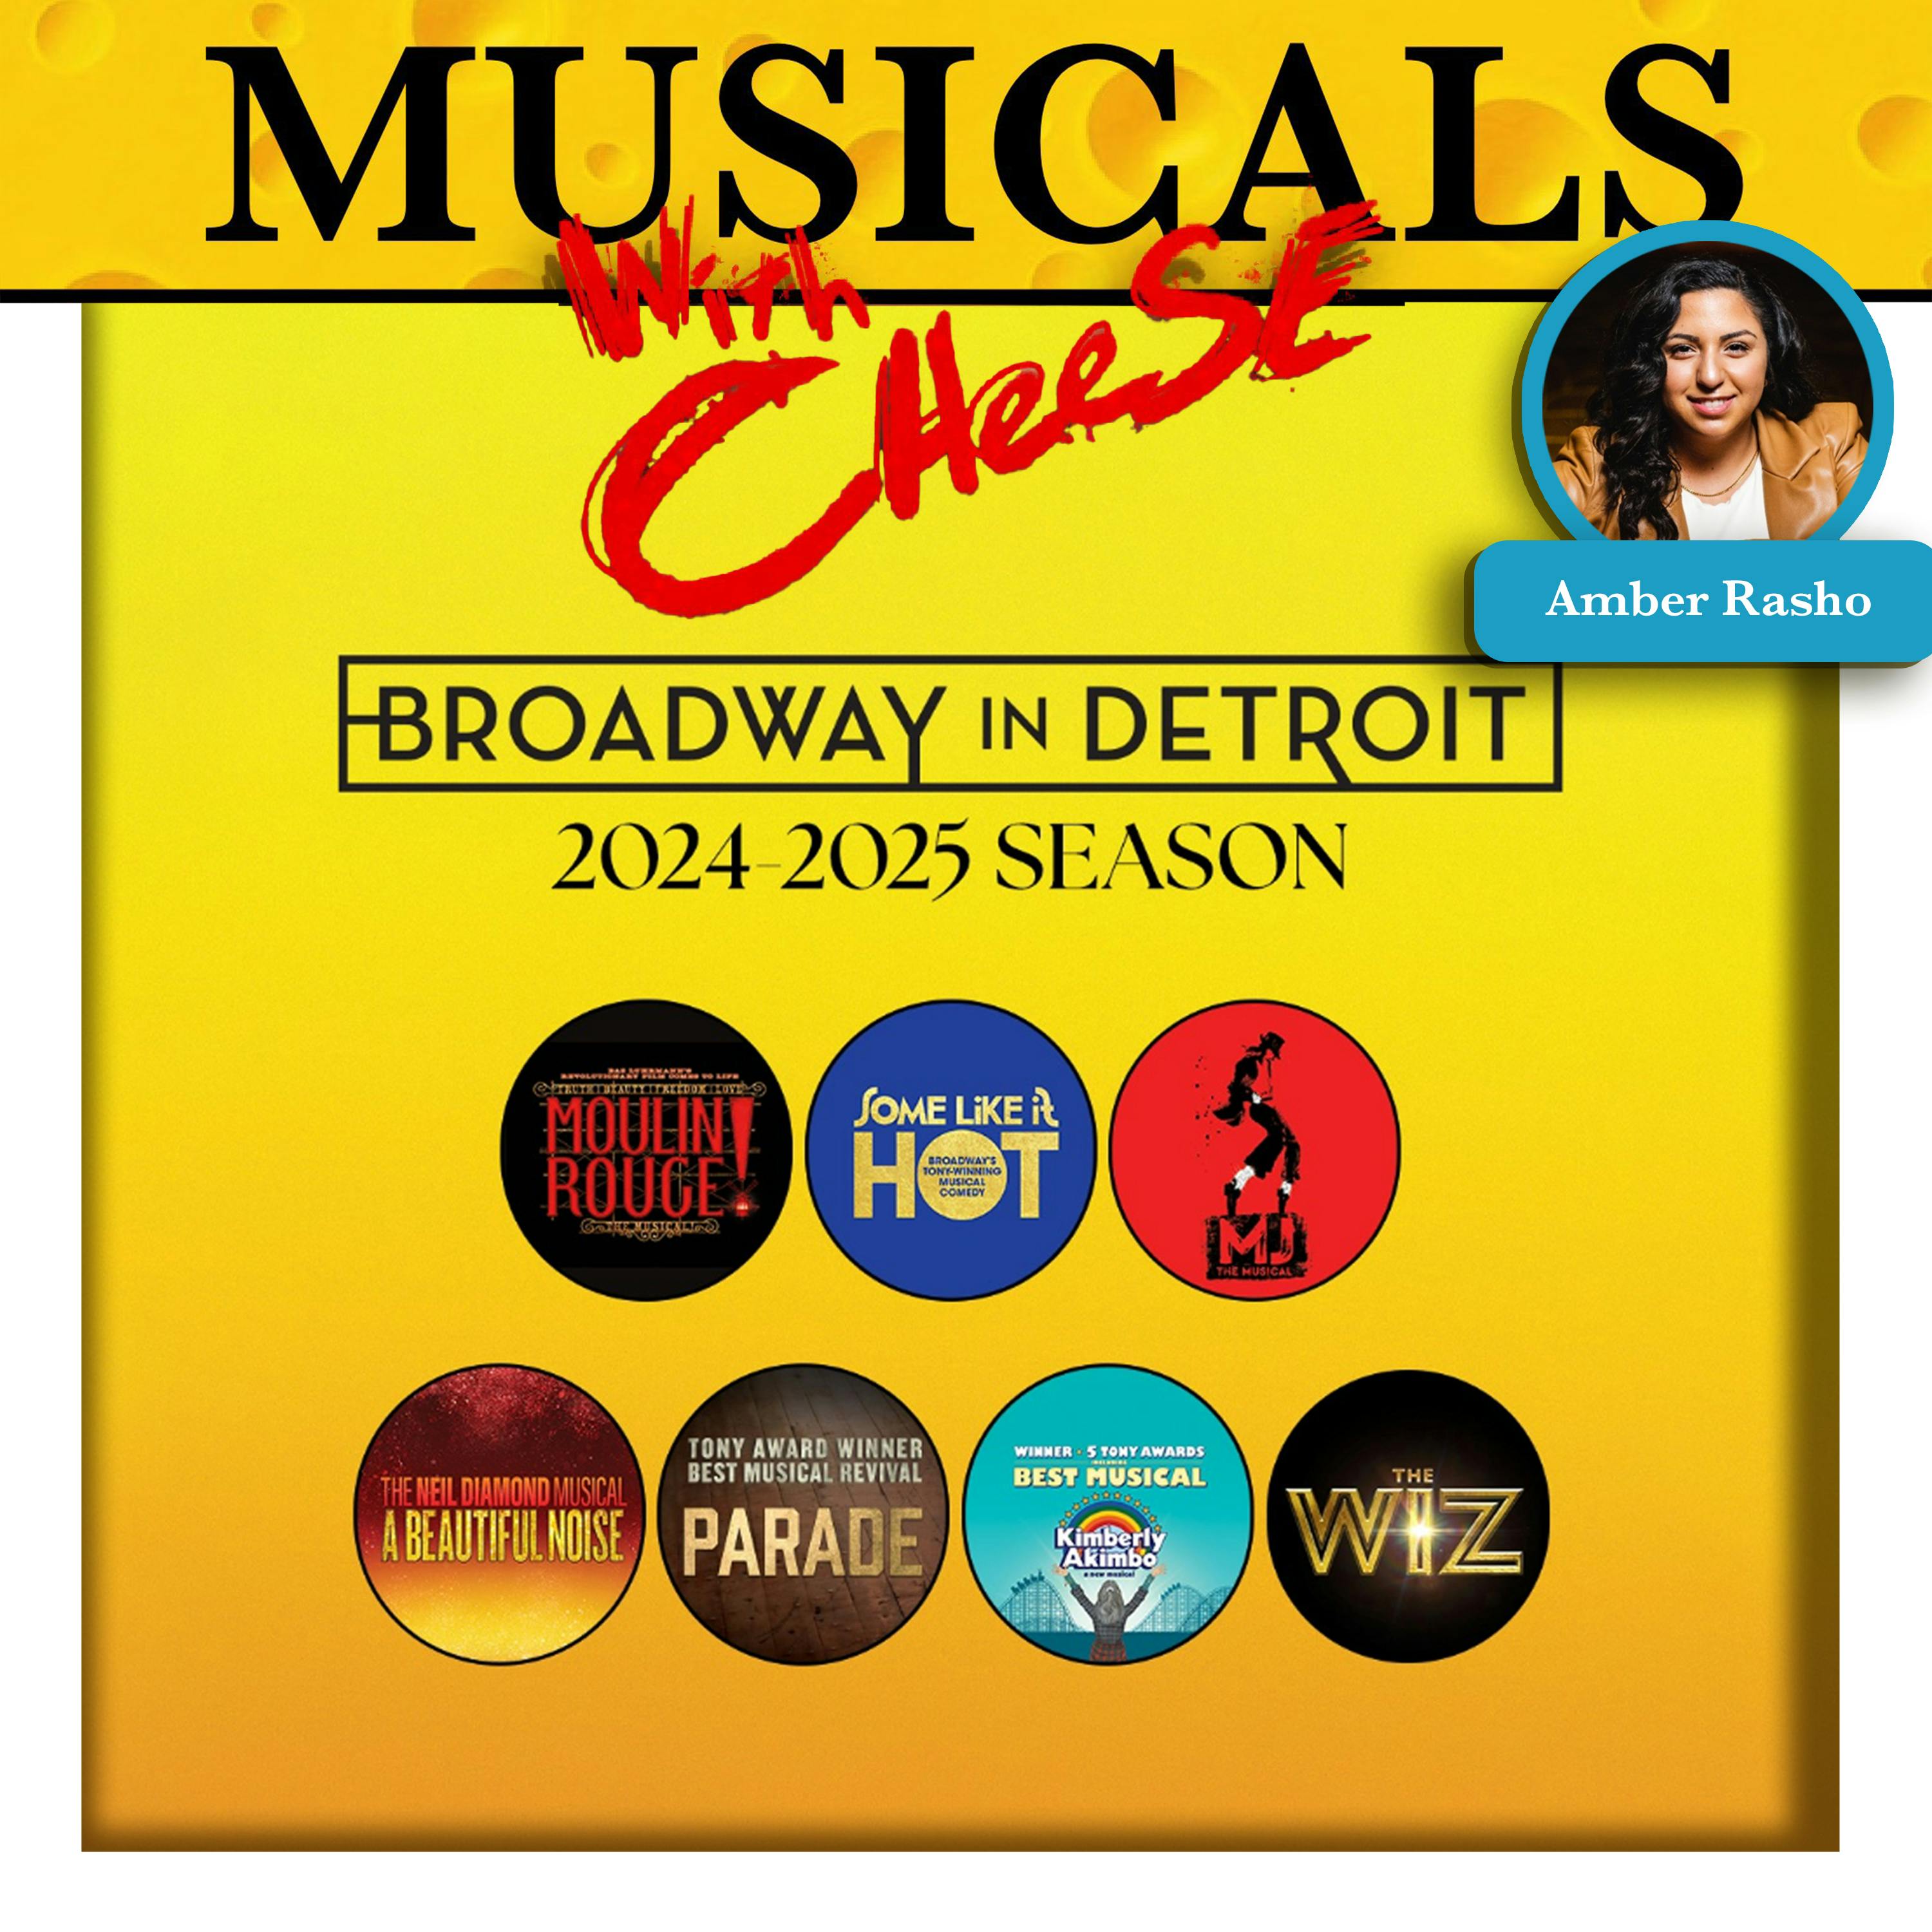 BONUS: Broadway in Detroit 2024 (feat. Amber Rasho)